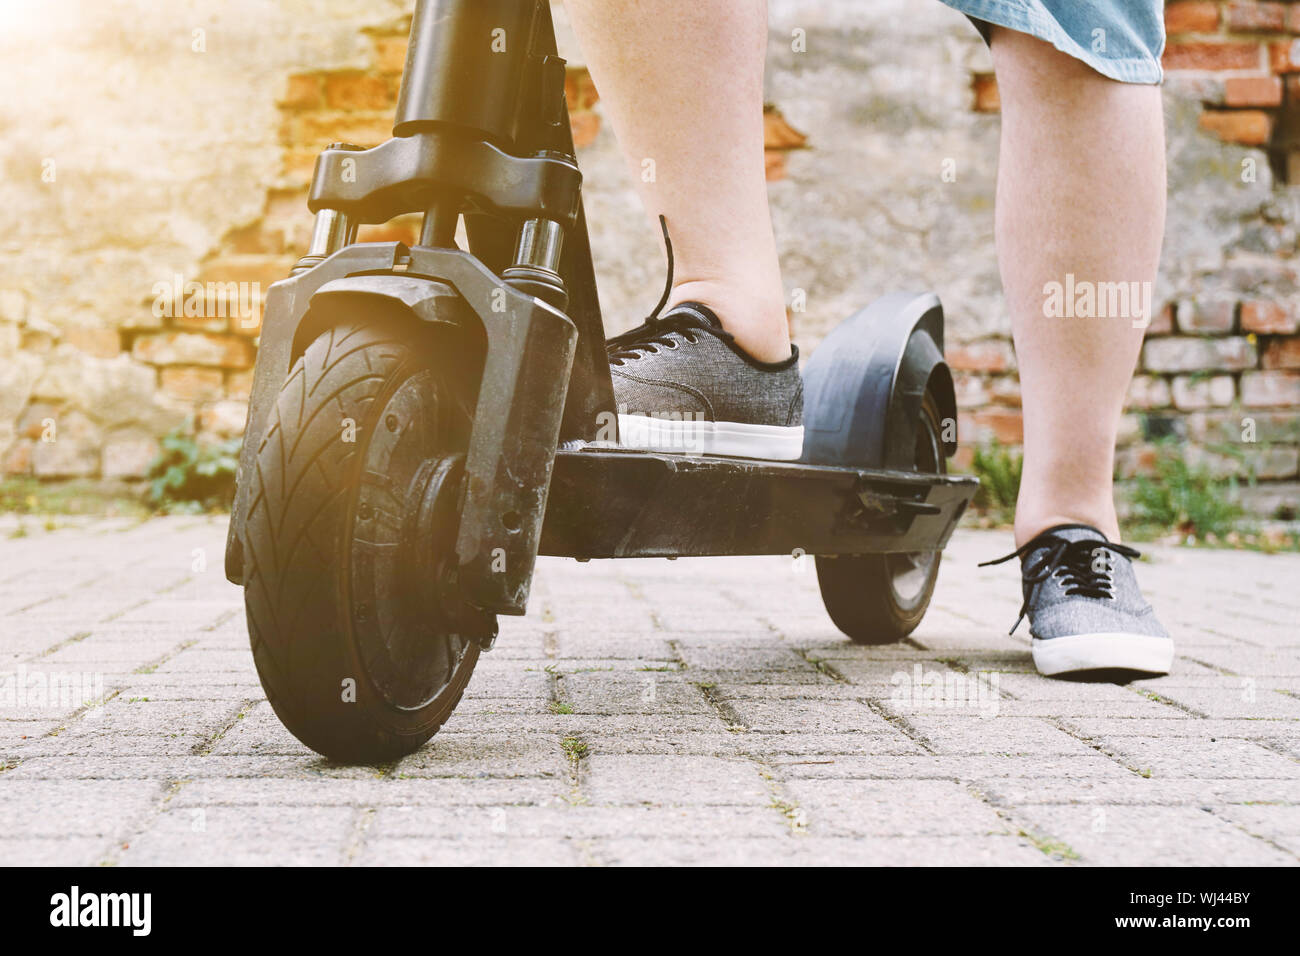 Les jambes de personne méconnaissable avec electric scooter de coup ou l'e-scooter - e-mobilité ou micro-mobilité concept tendance style hipster avec filtre sun flare Banque D'Images